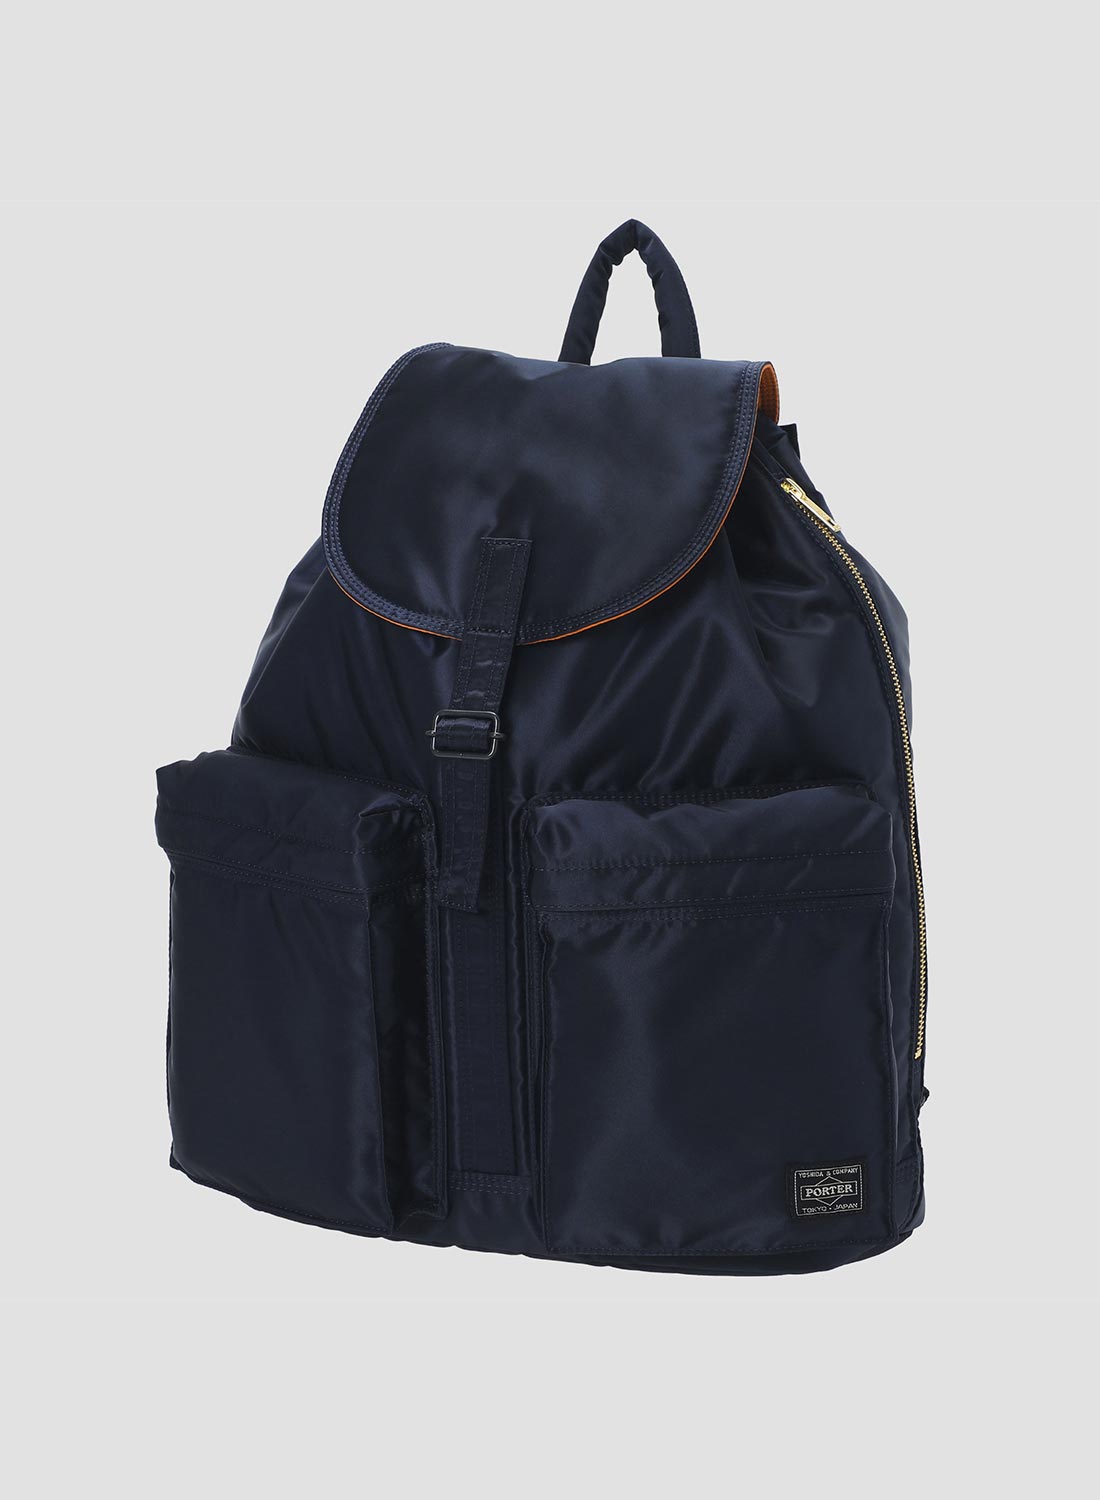 Porter-Yoshida and Co Tanker Day Backpack Medium Iron Blue for Men